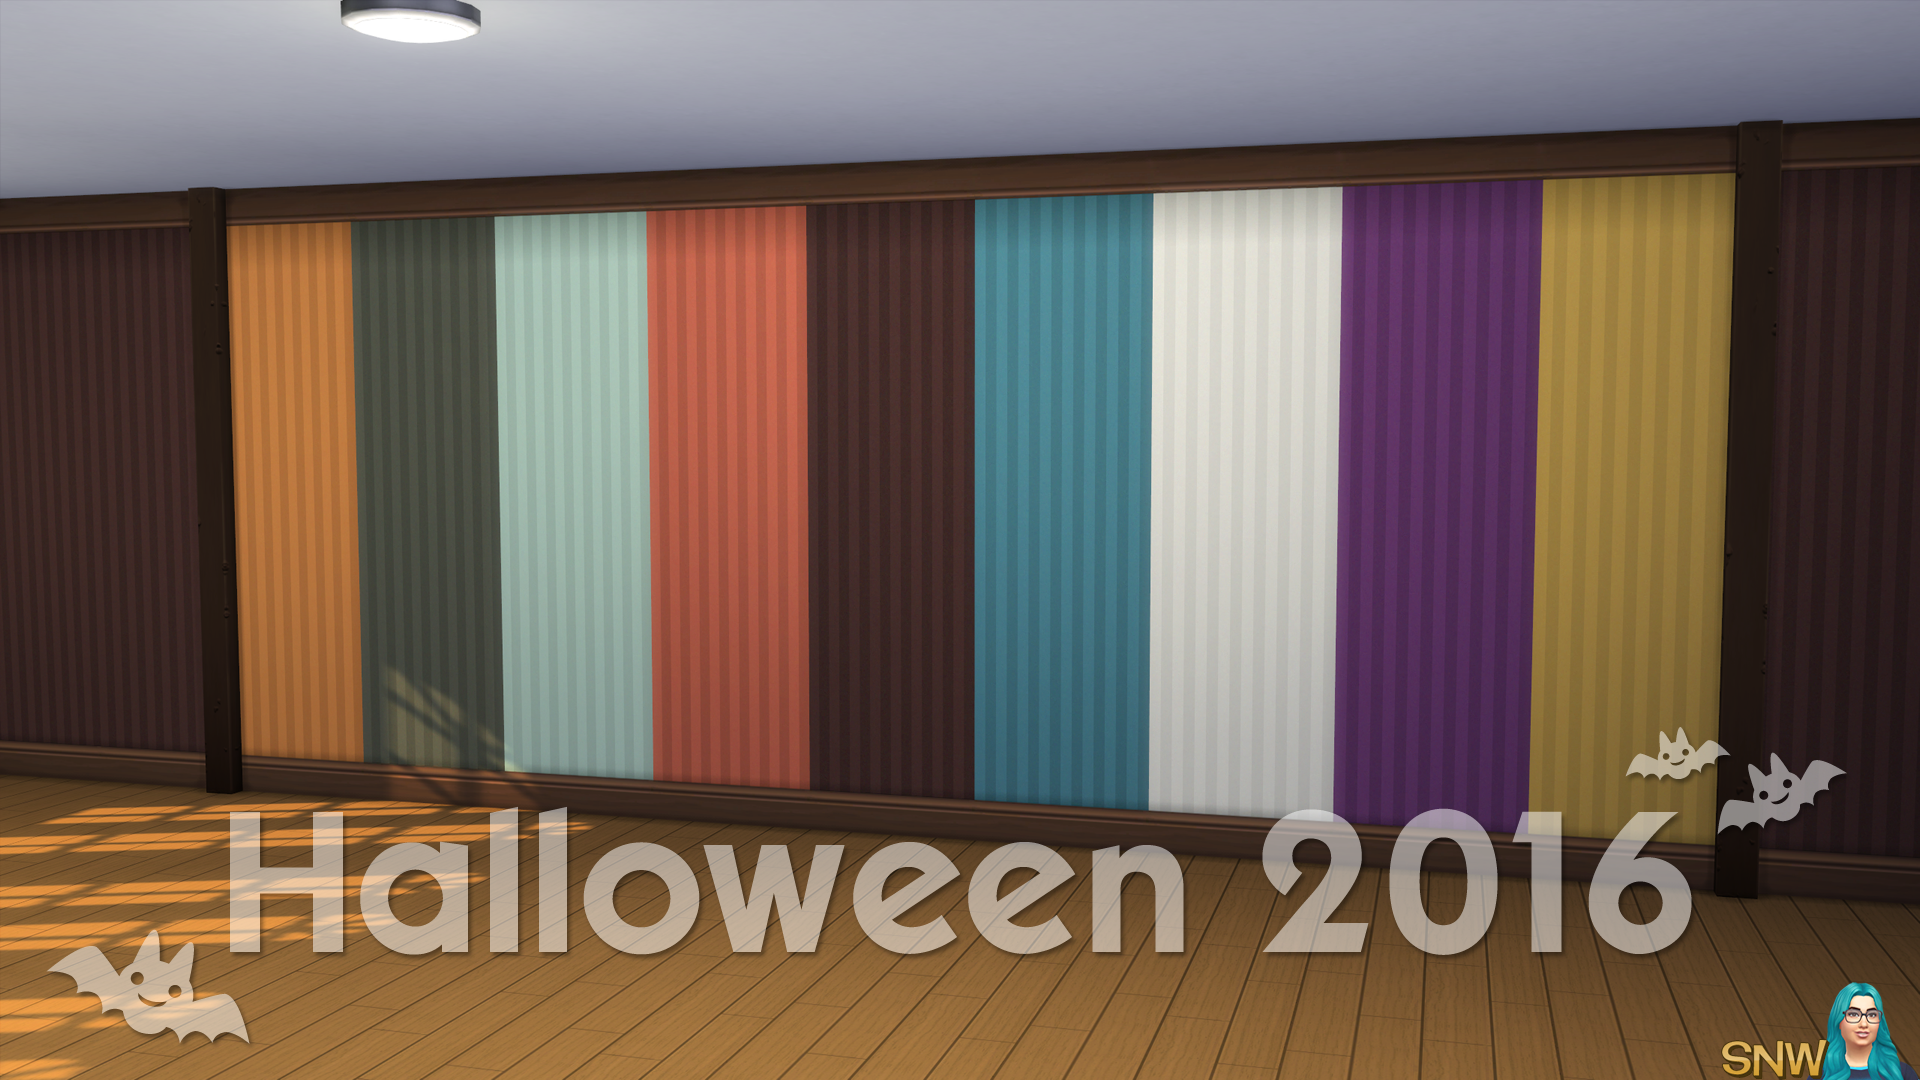 Halloween 2016 Walls #3